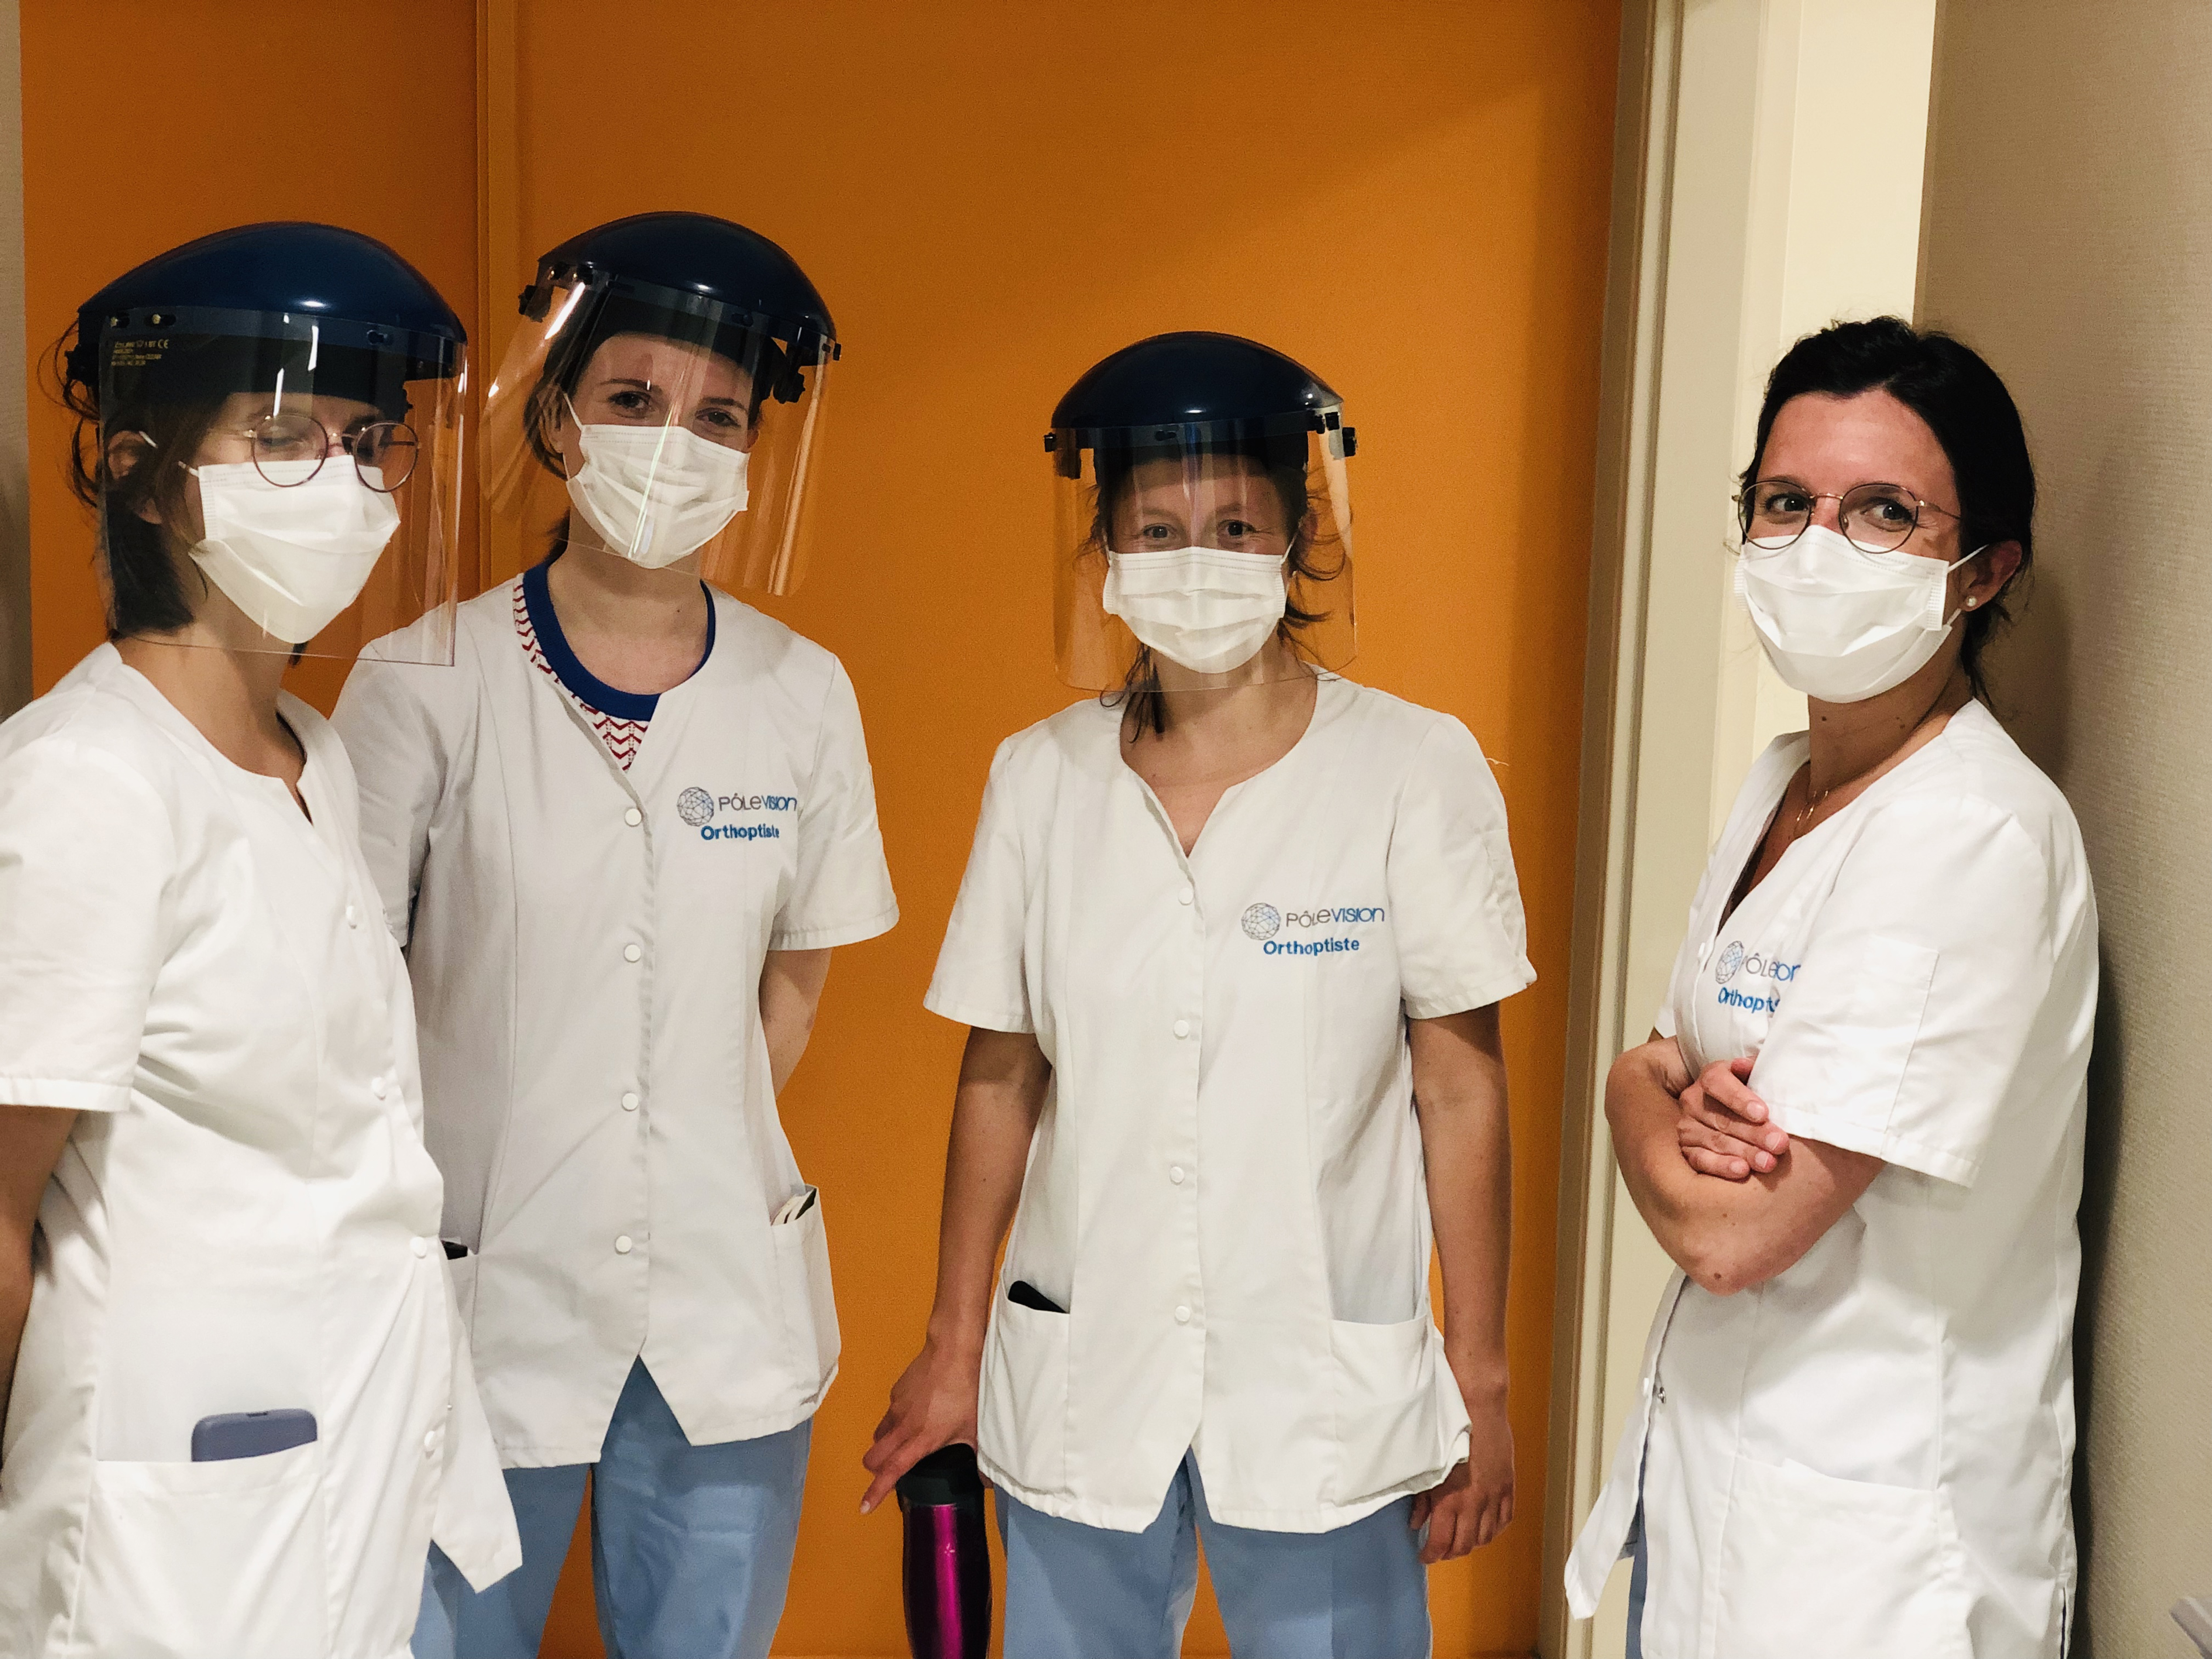 Port du masque et des équipements de protection contribuant à la securité de la consultation du patient Pôle Vision en période d'épidémie à COVID-19 centre spécialiste de l'ophtalmologie a Lyon